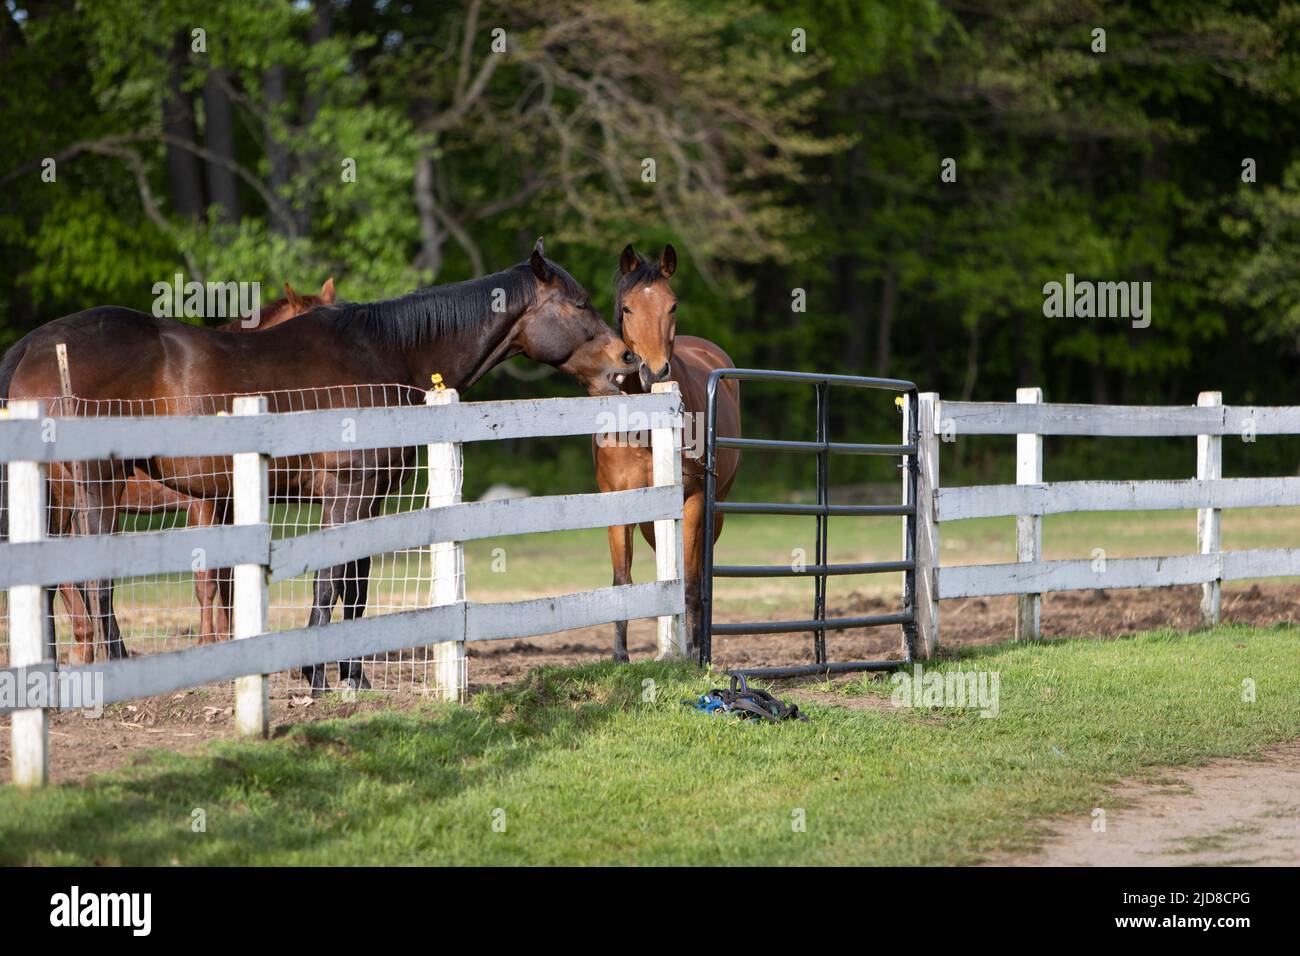 Deux chevaux montrant de l'affection dans une ferme de chevaux. Banque D'Images